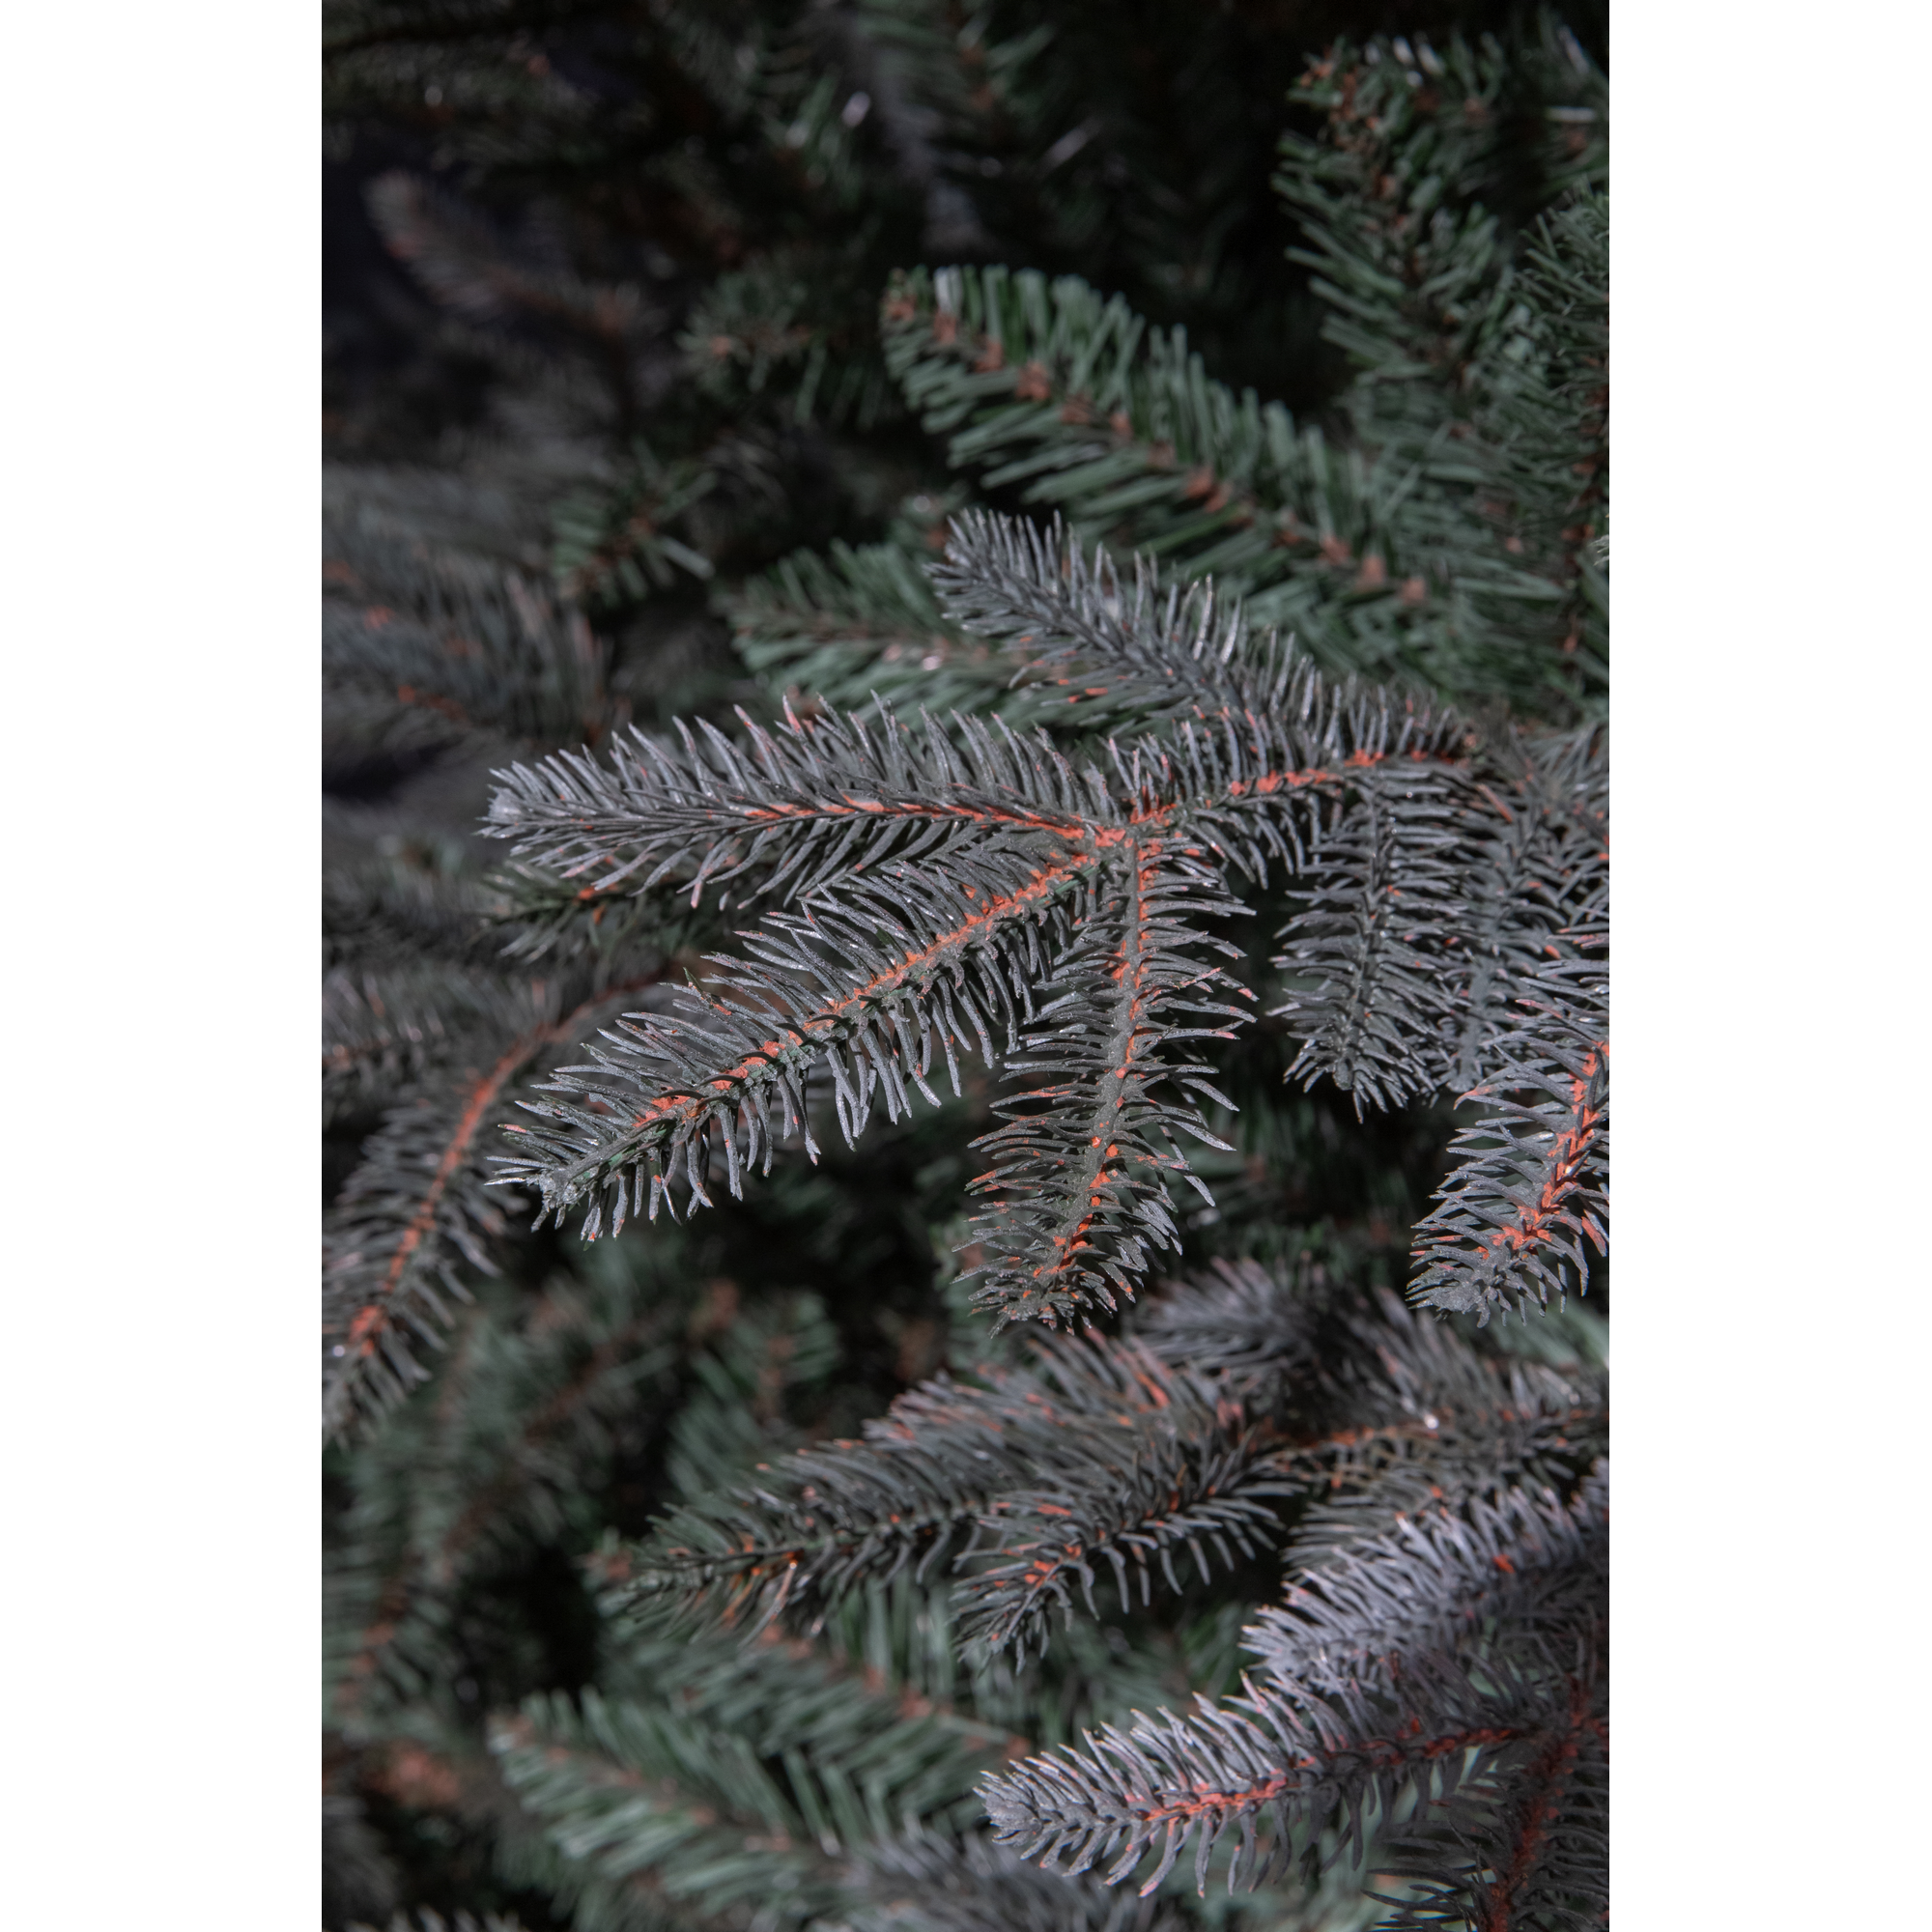 Künstlicher Weihnachtsbaum 'Fraiser' grün 185 cm + product picture